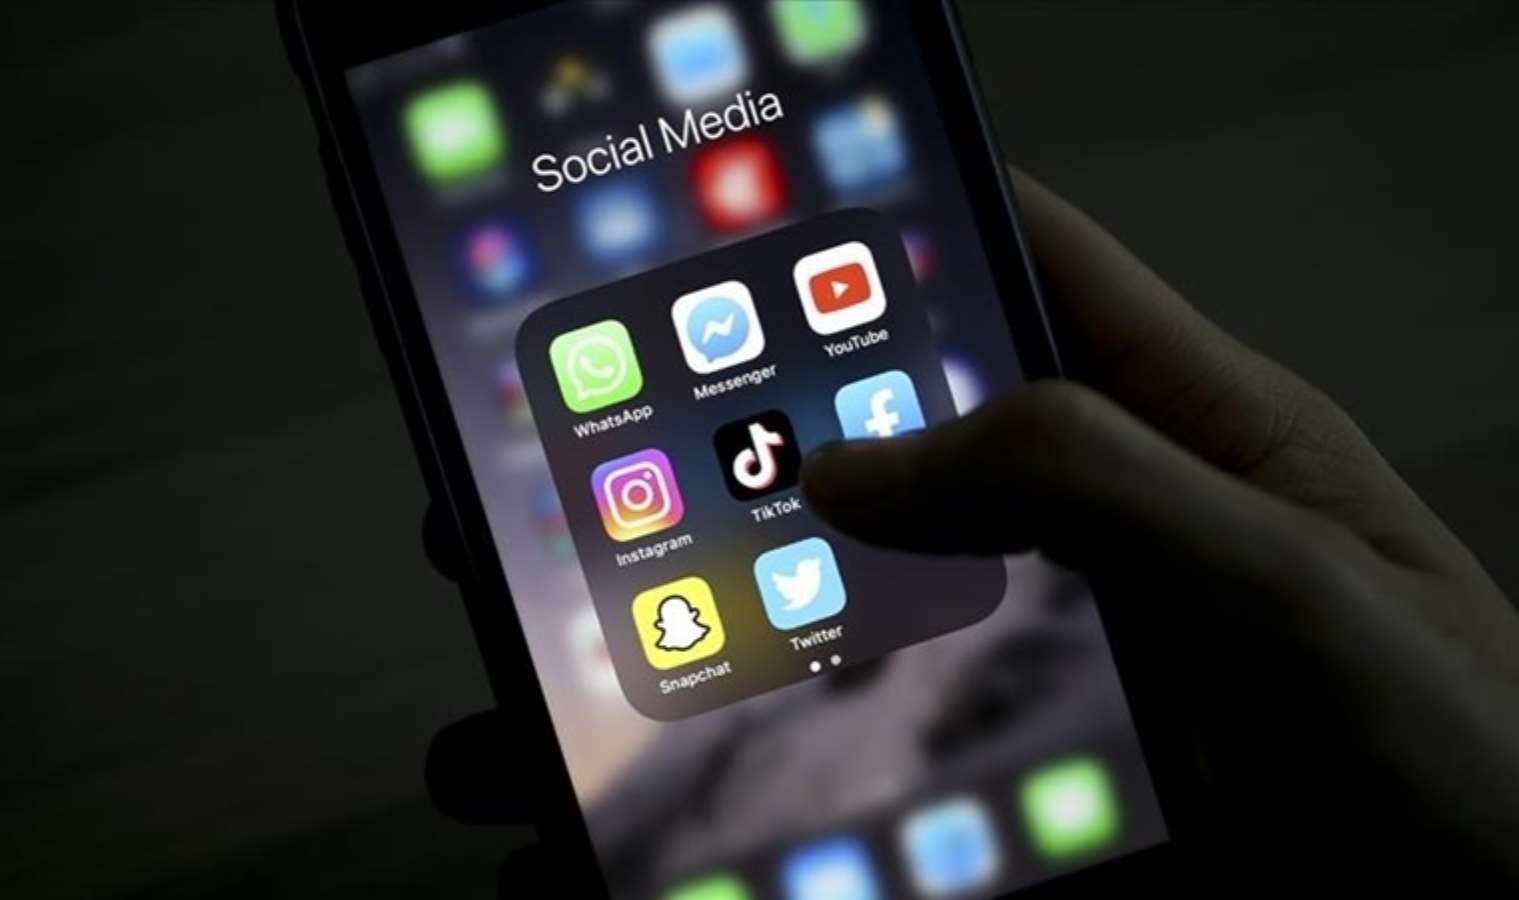 Dünya nüfusunun ne kadarı sosyal medya kullanıyor? - Son Dakika Bilim Teknoloji Haberleri | Cumhuriyet